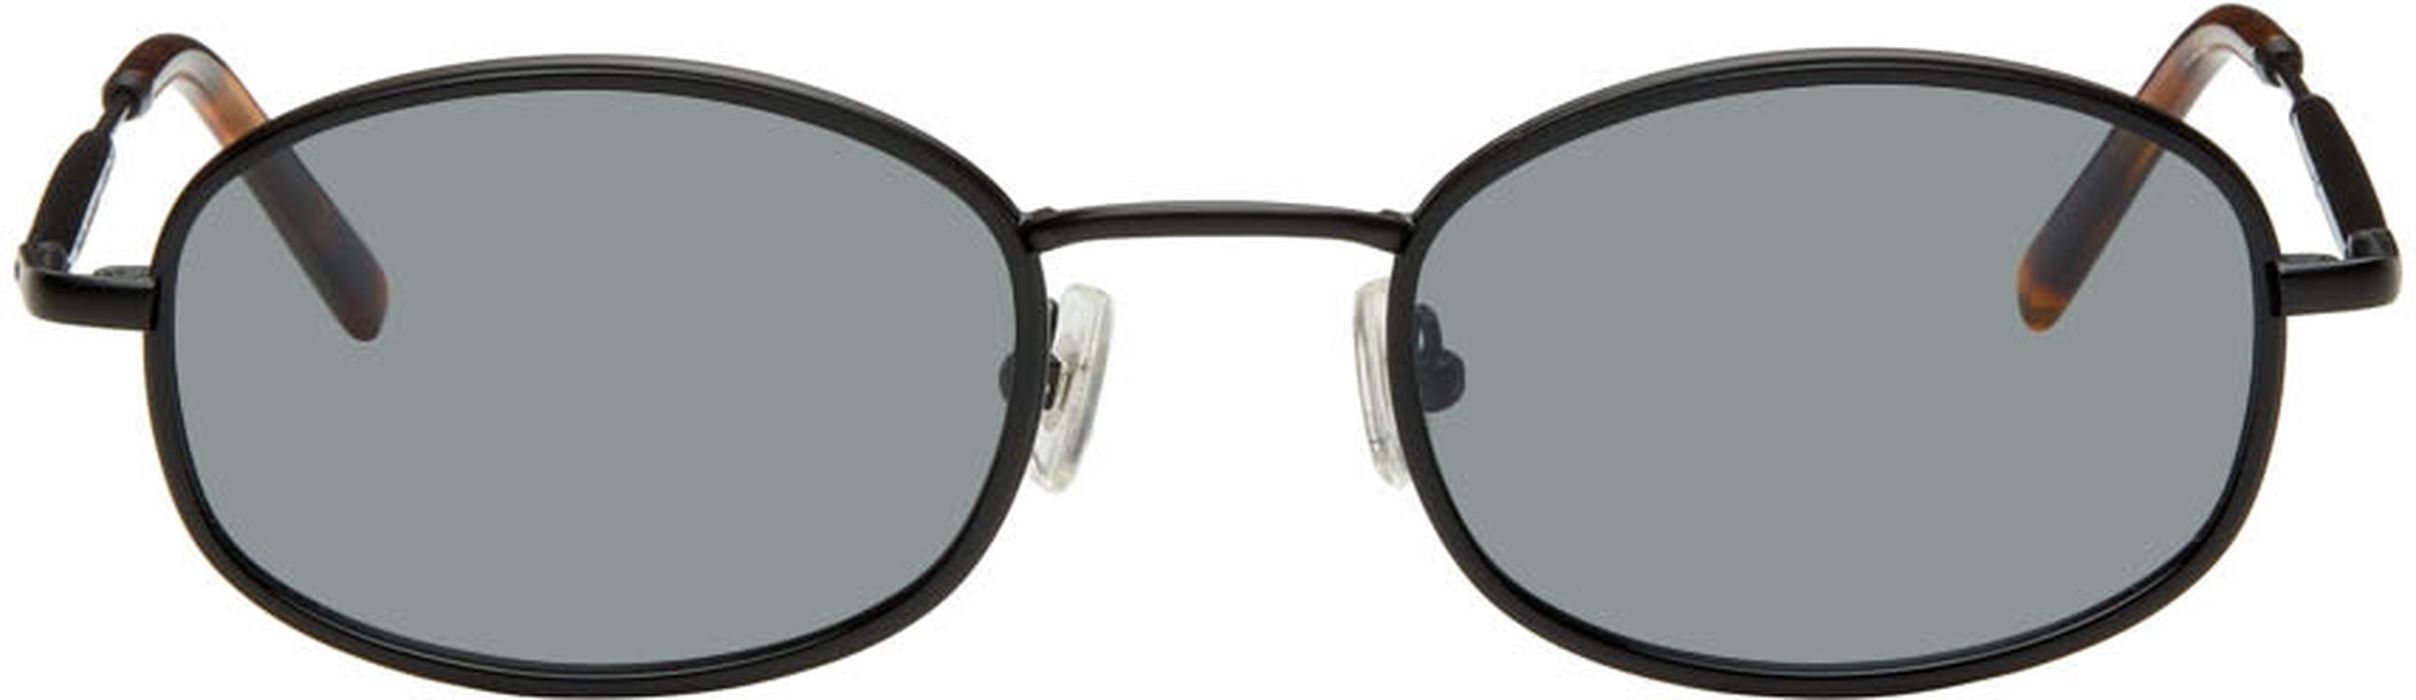 BONNIE CLYDE Black No.7 Sunglasses